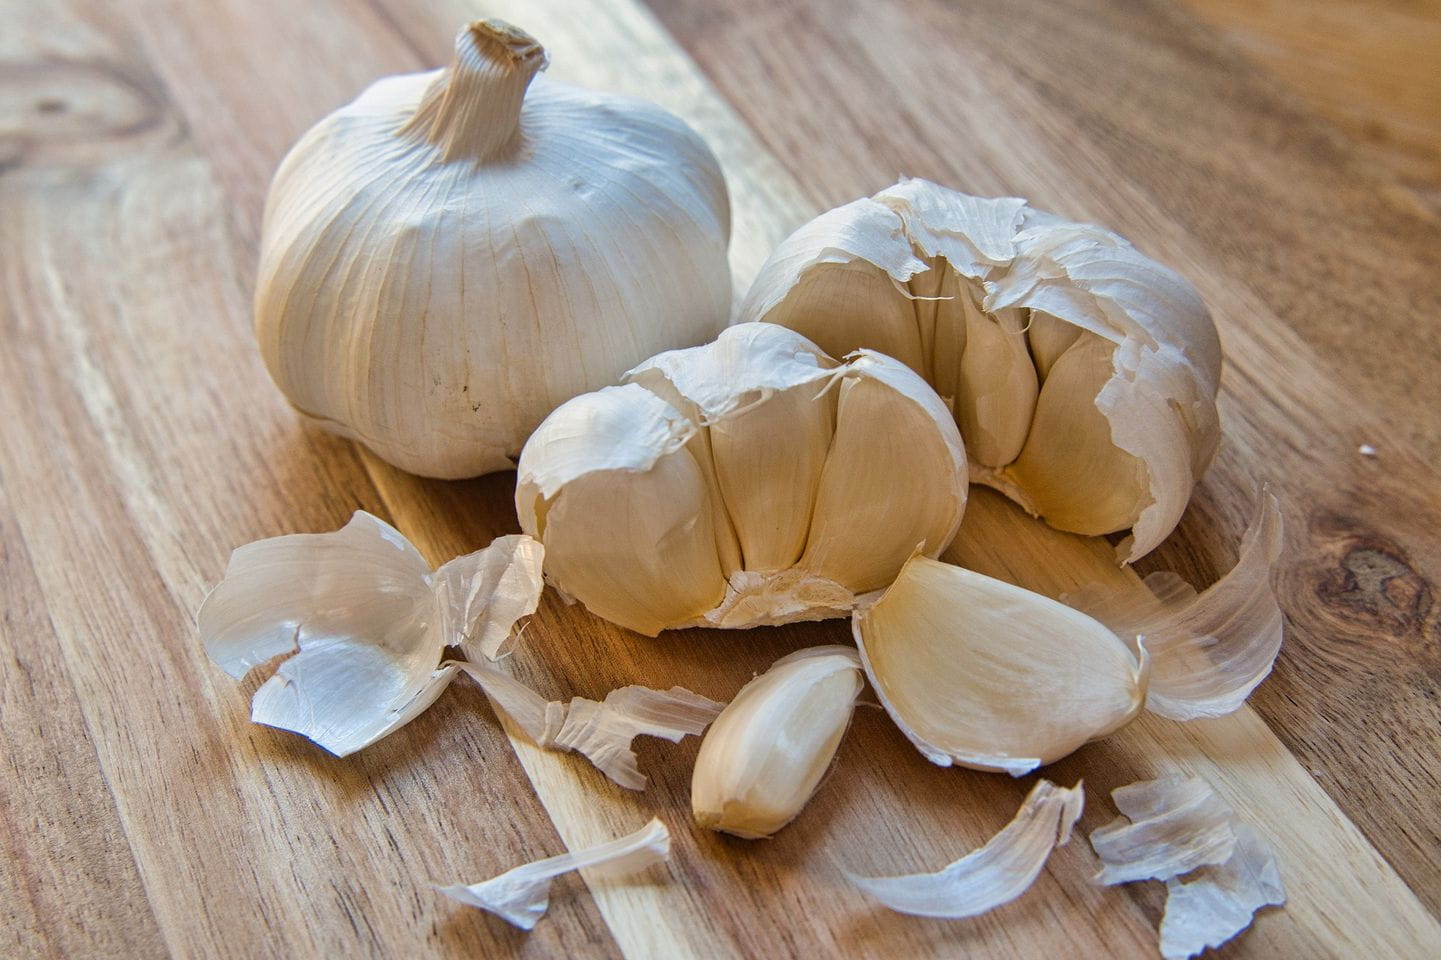 What is garlic clove?